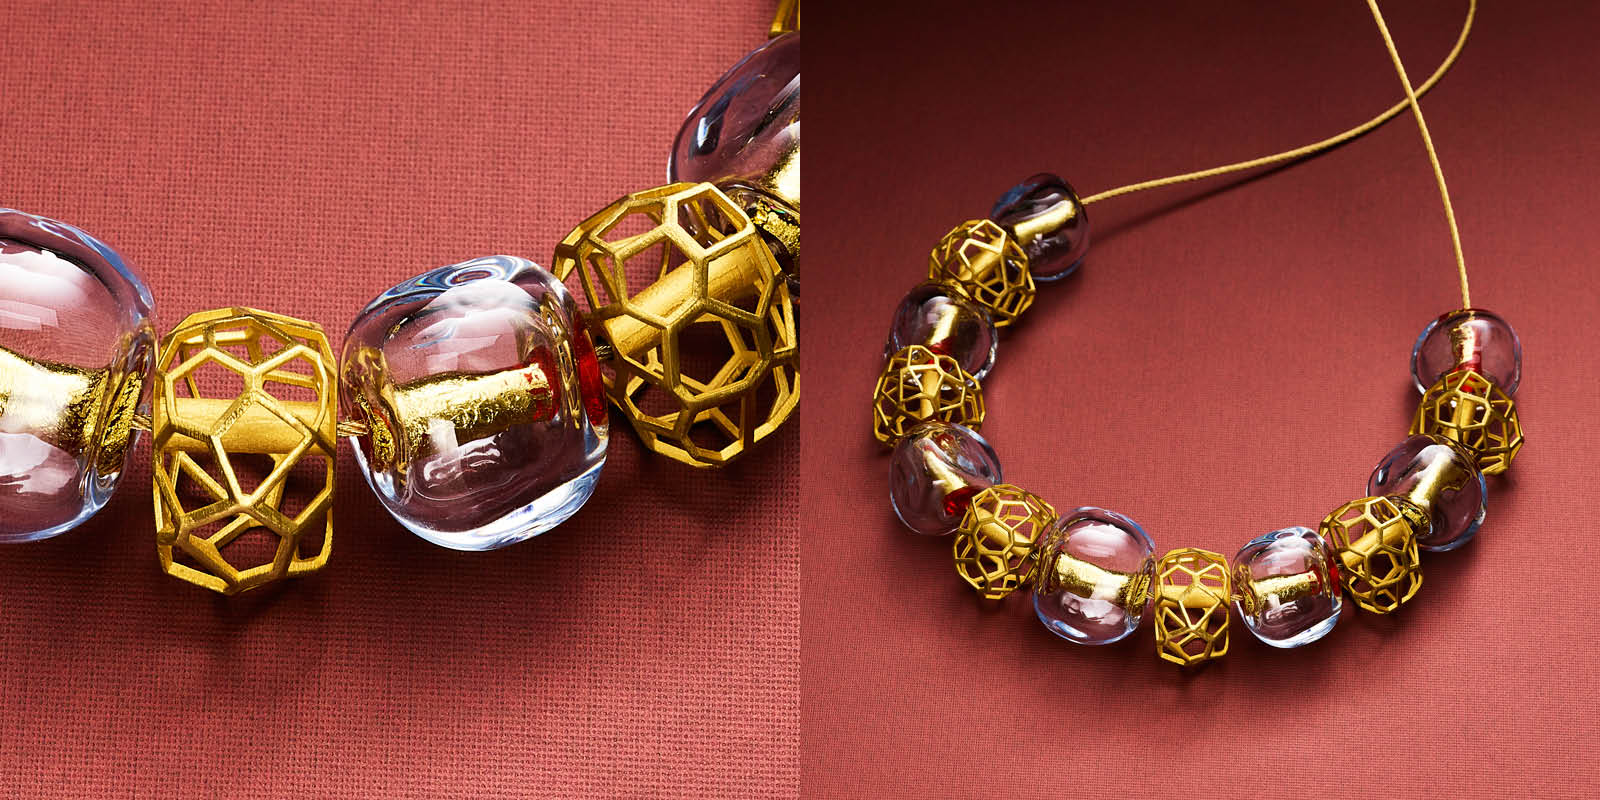 22 karat gold and handblown glass beads